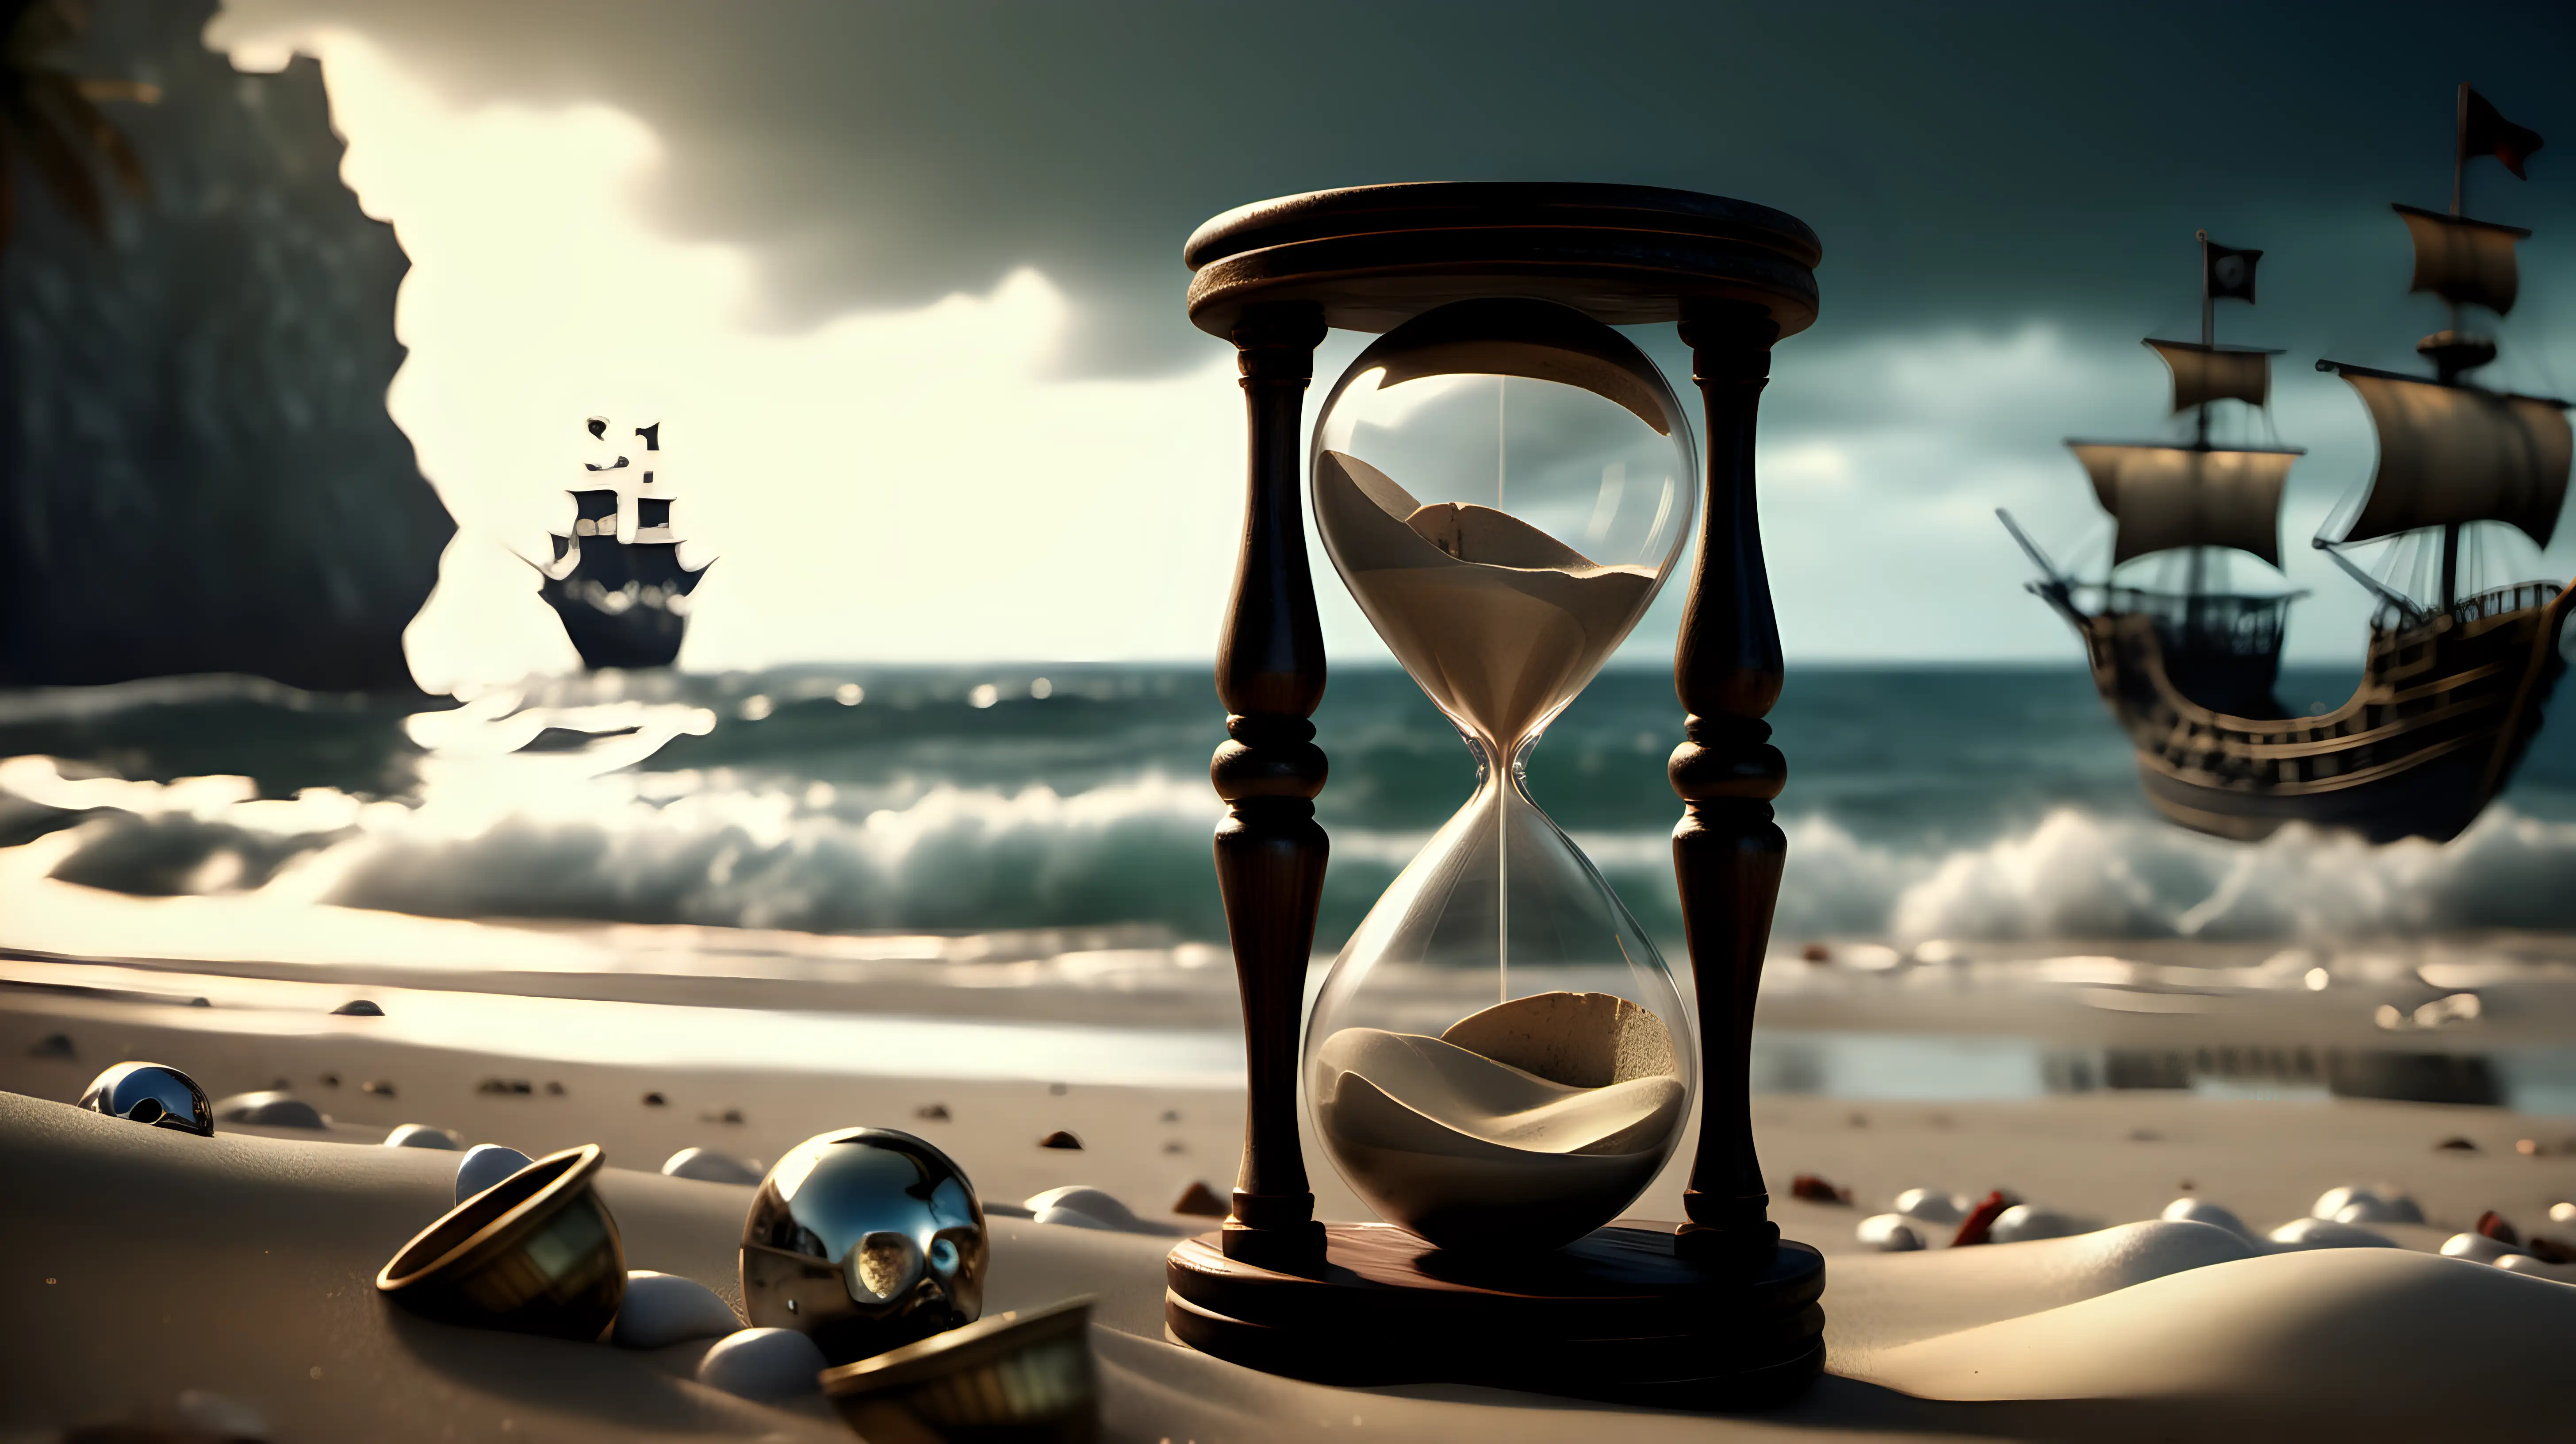 Imagen ultra realista,reloj de arena en una playa, barcos piratas al fondo,iluminación cinemática,alta definición,16k